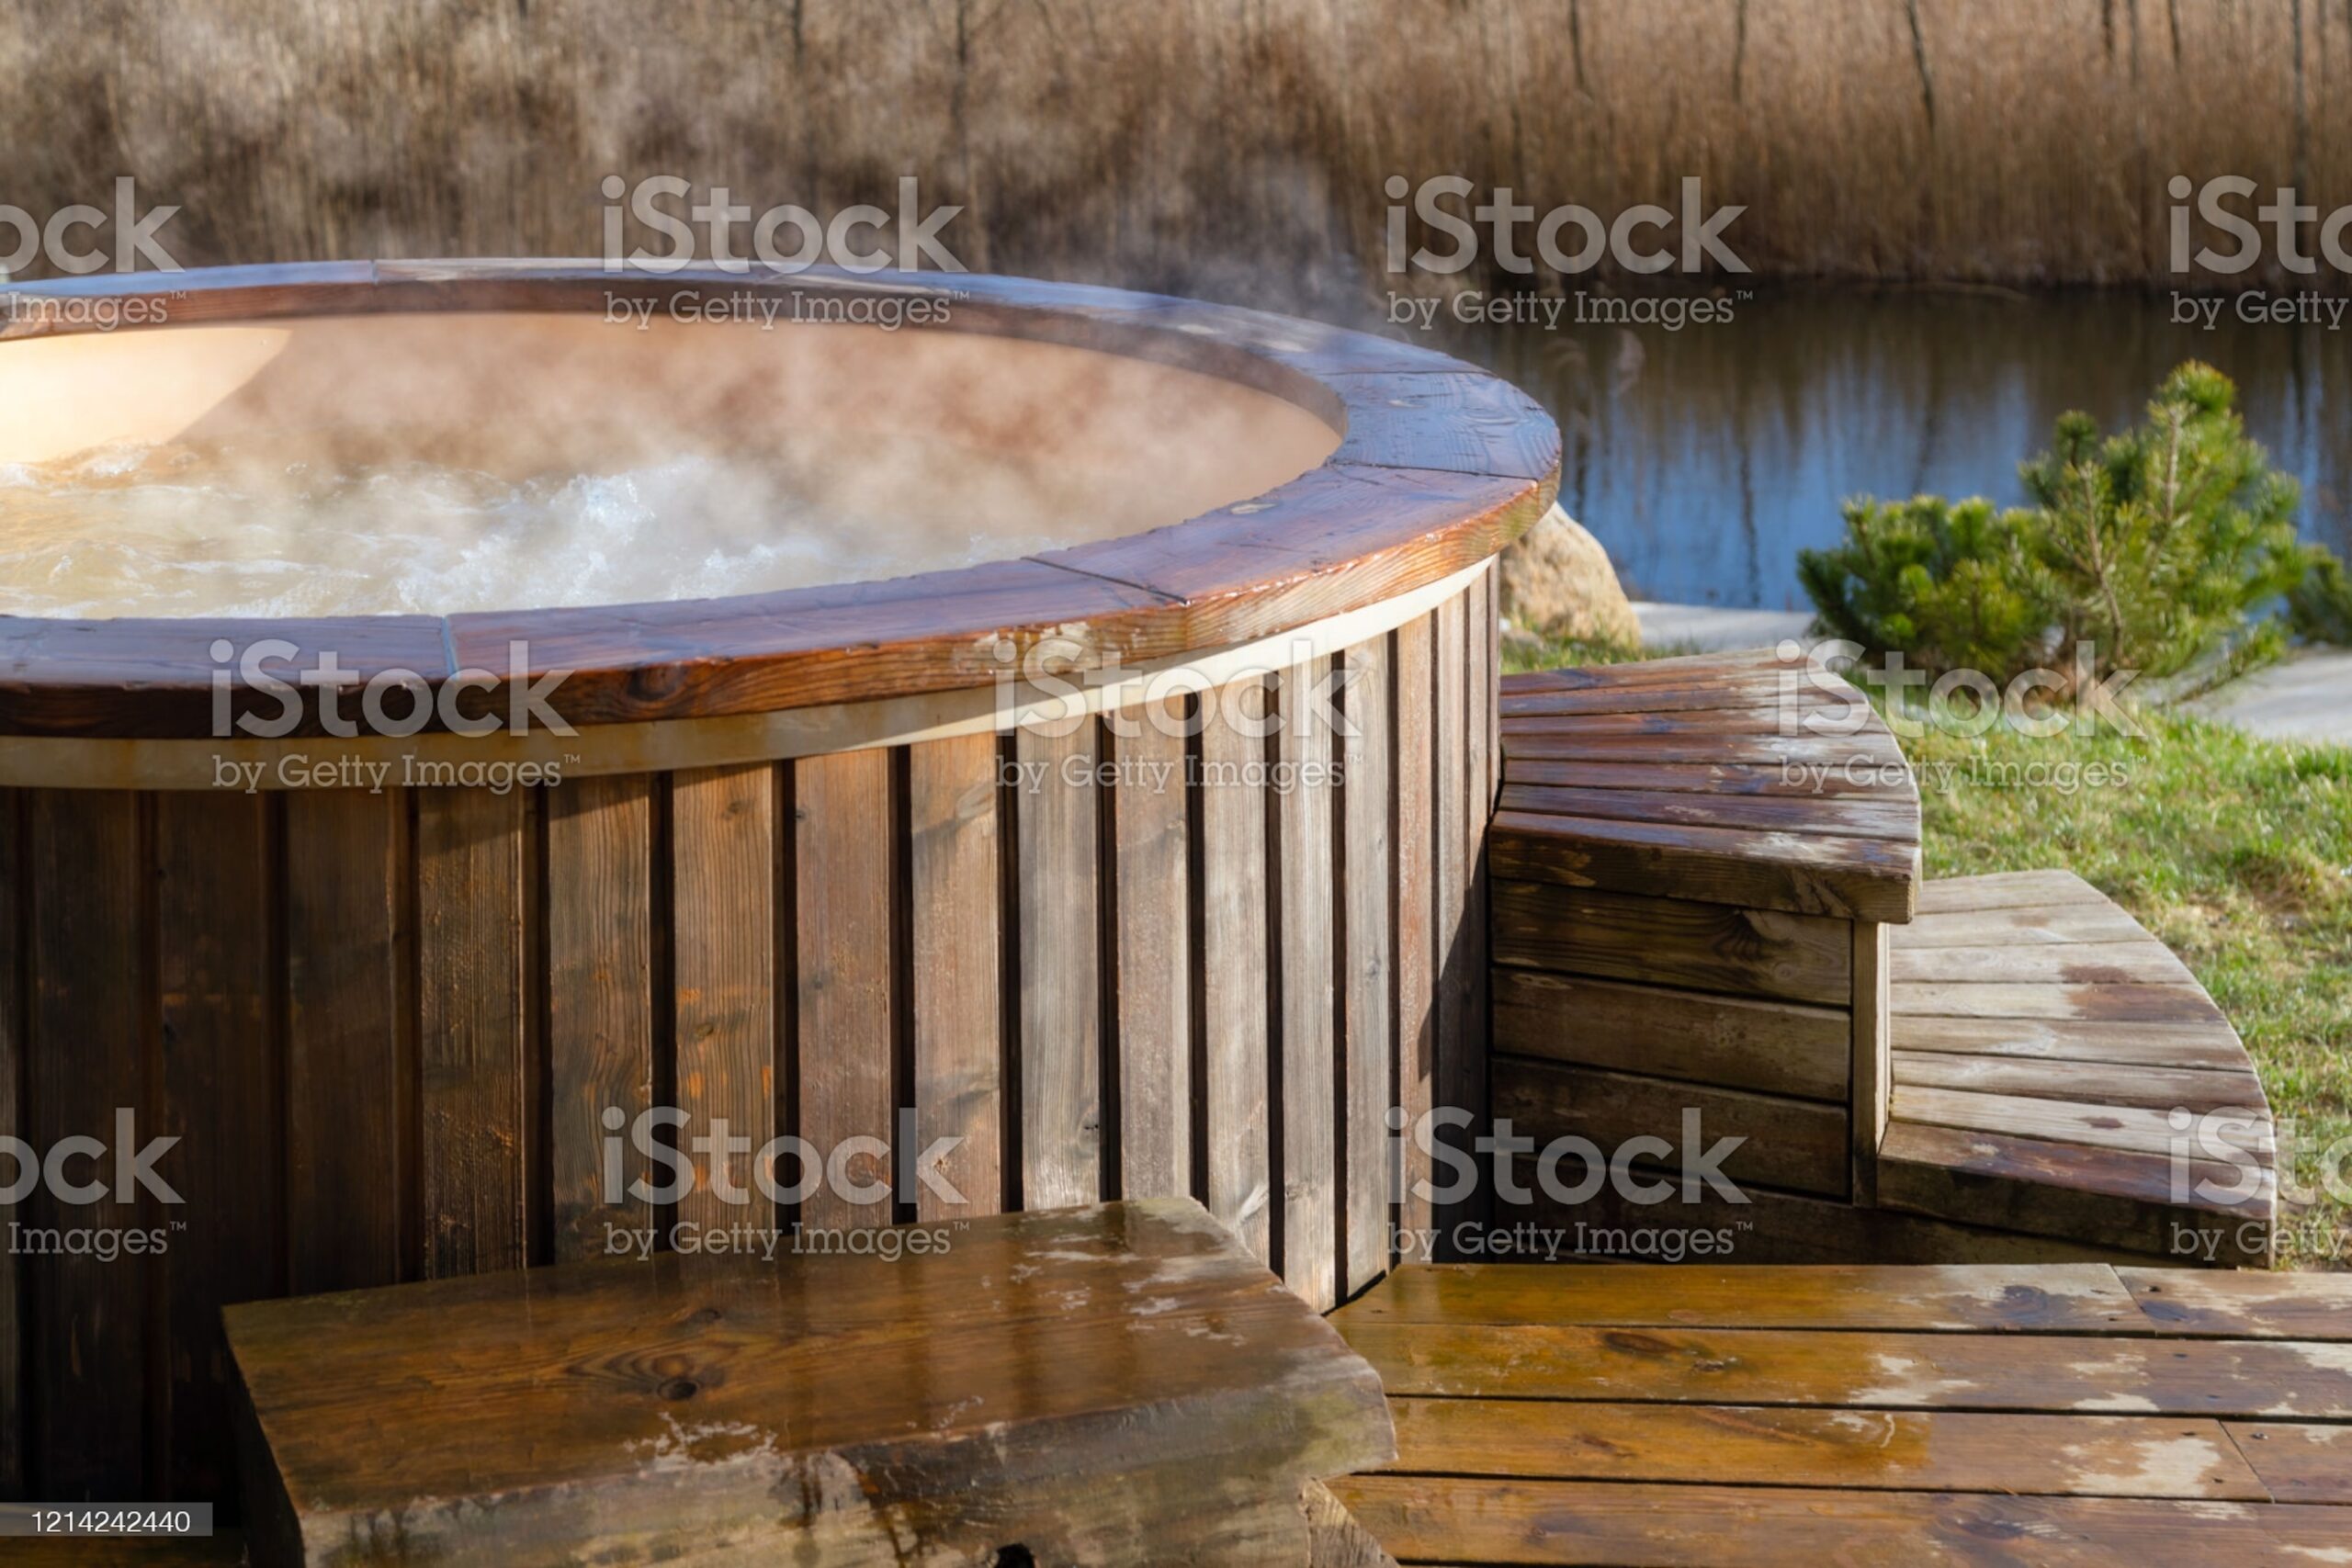 Piscine in legno con idromassaggio